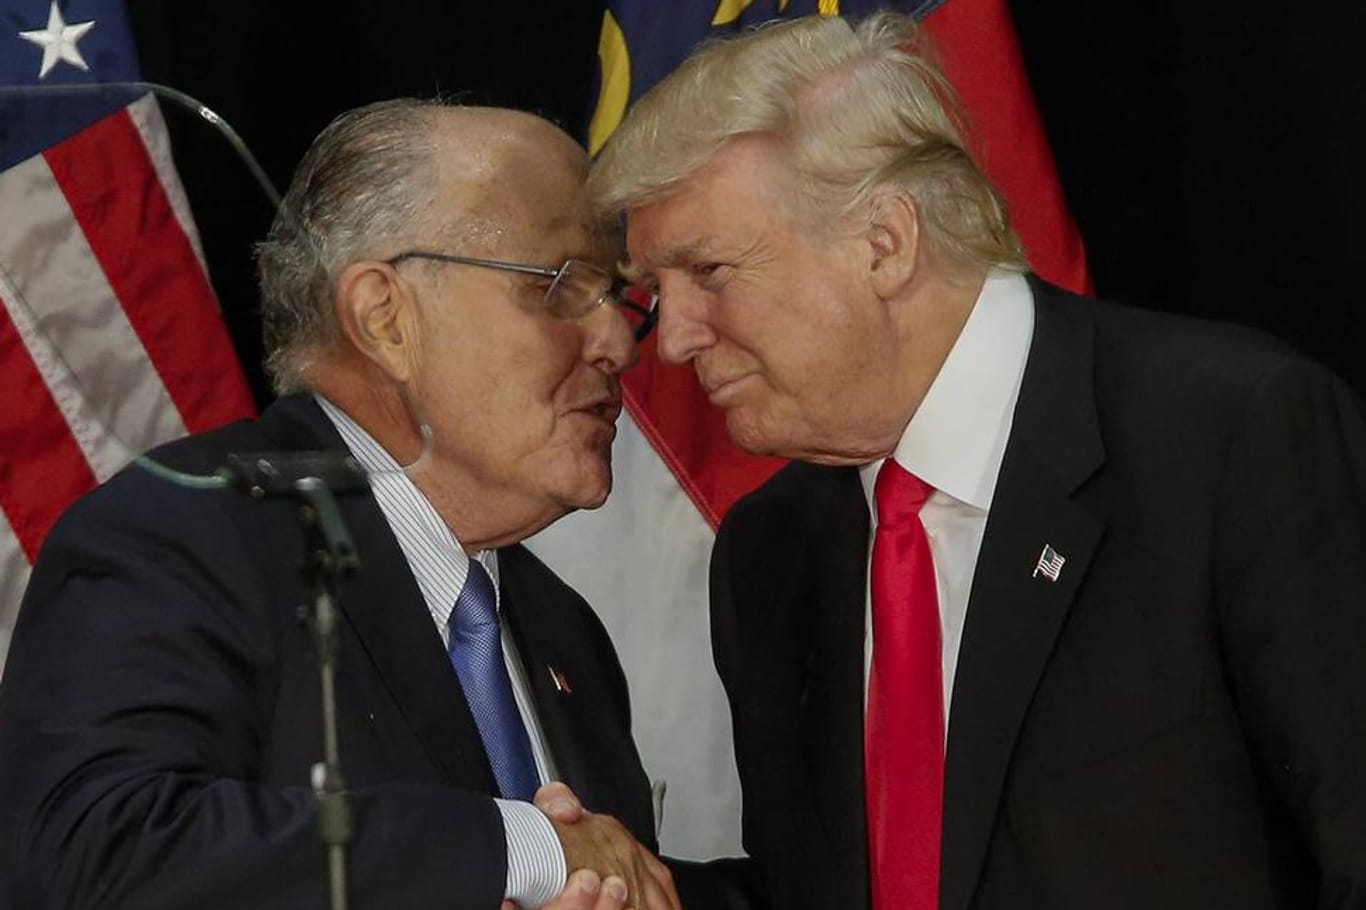 Donald Trump und Rudy Giuliani: Trumps Anwalt gerät ins Visier der Ermittlungen